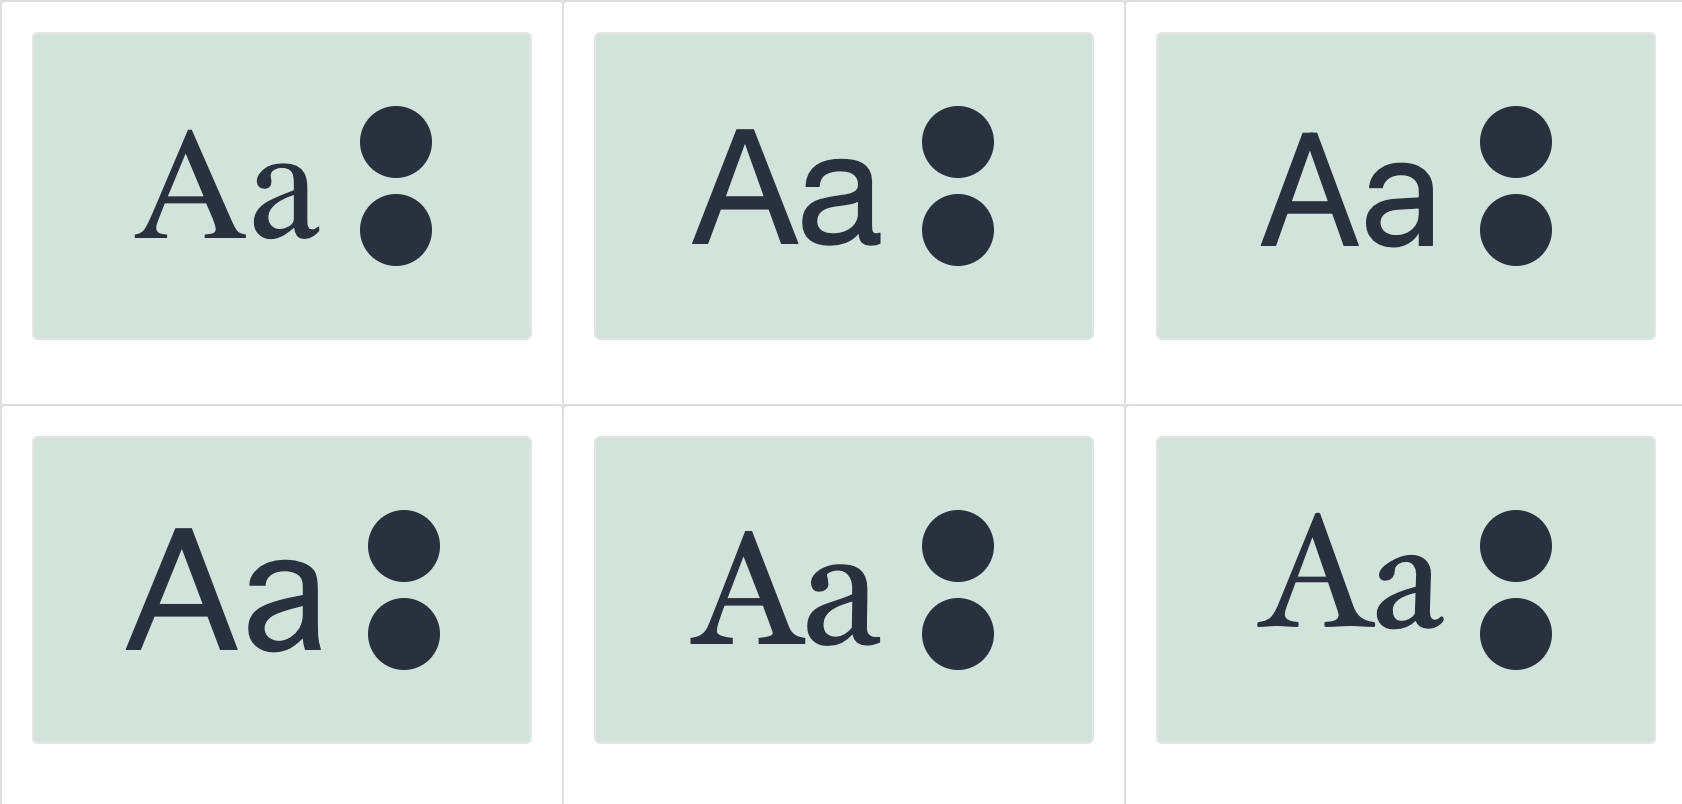 Sei diverse anteprime dello stesso testo ("Aa") con diverse famiglie di caratteri.